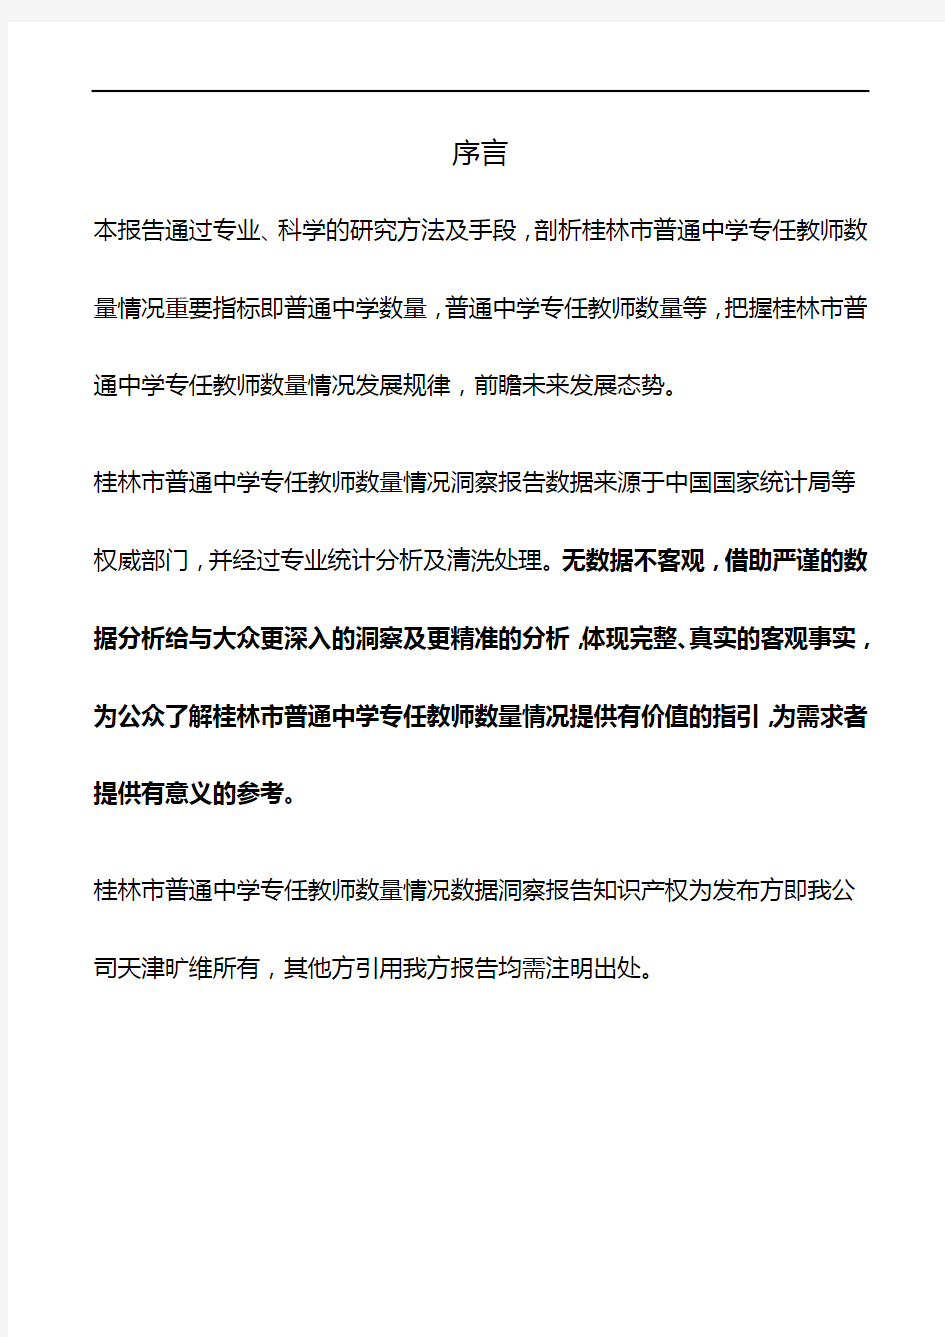 桂林市(全市)普通中学专任教师数量情况3年数据洞察报告2019版